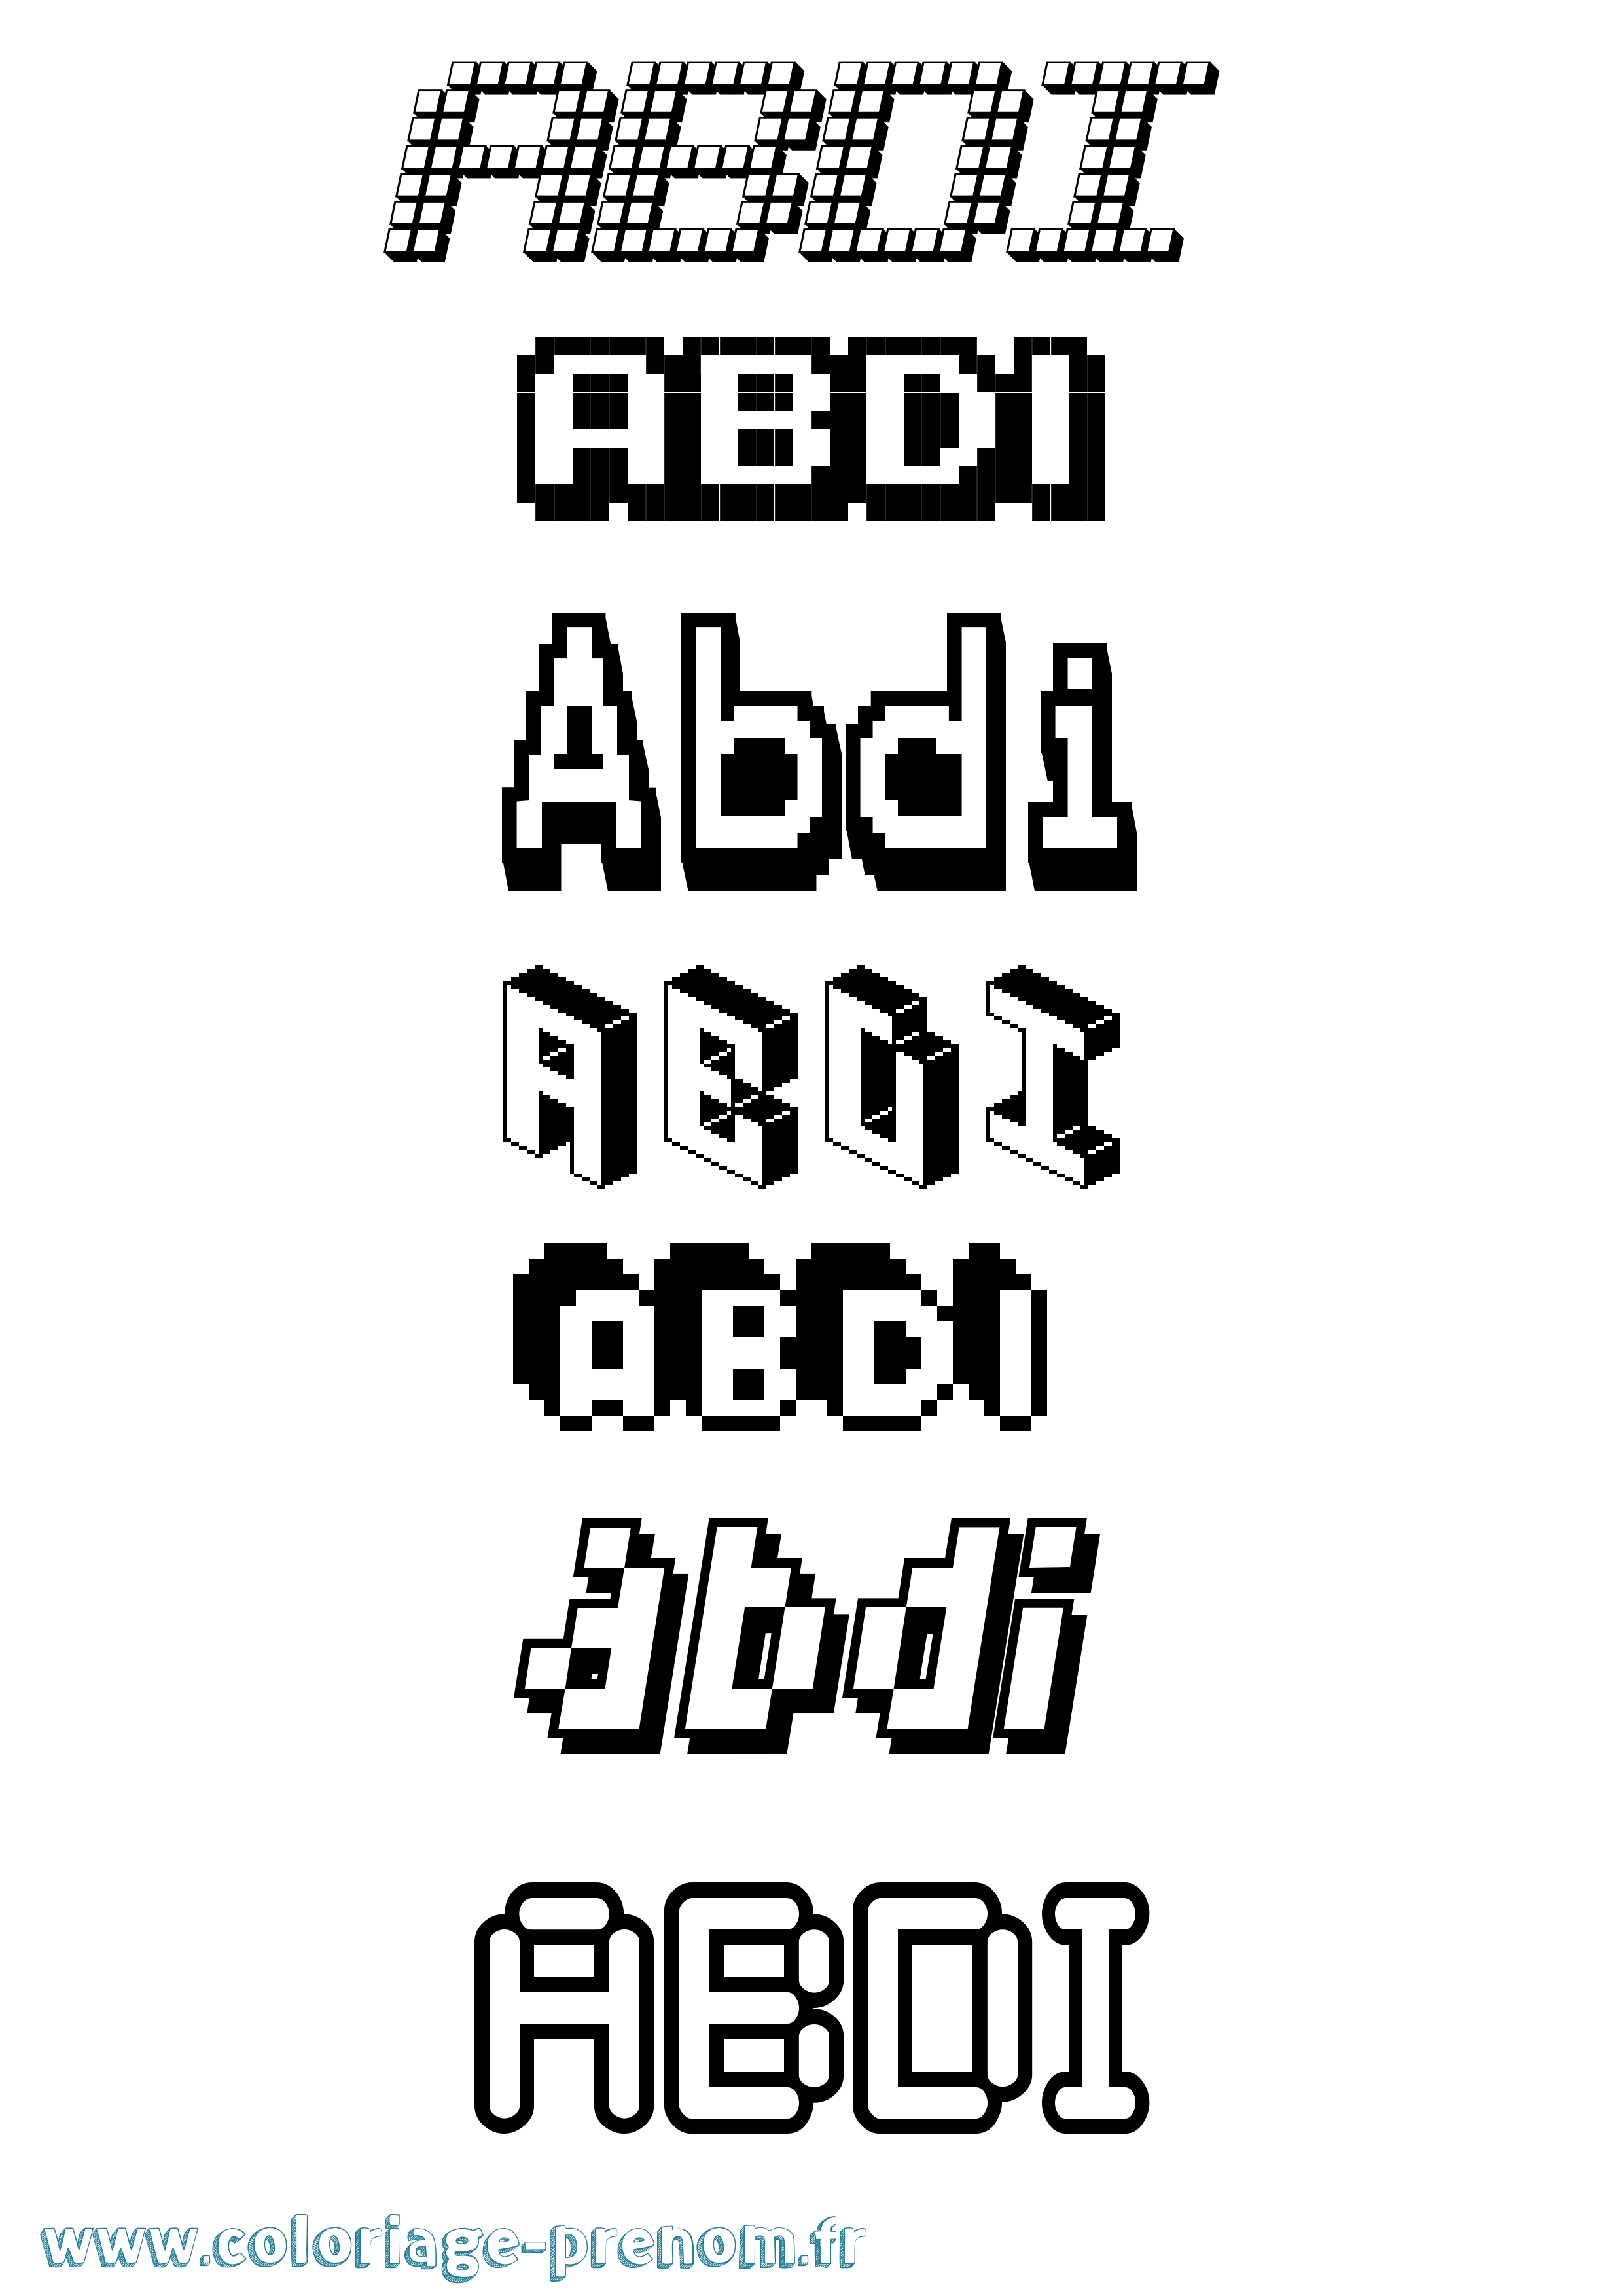 Coloriage prénom Abdi Pixel